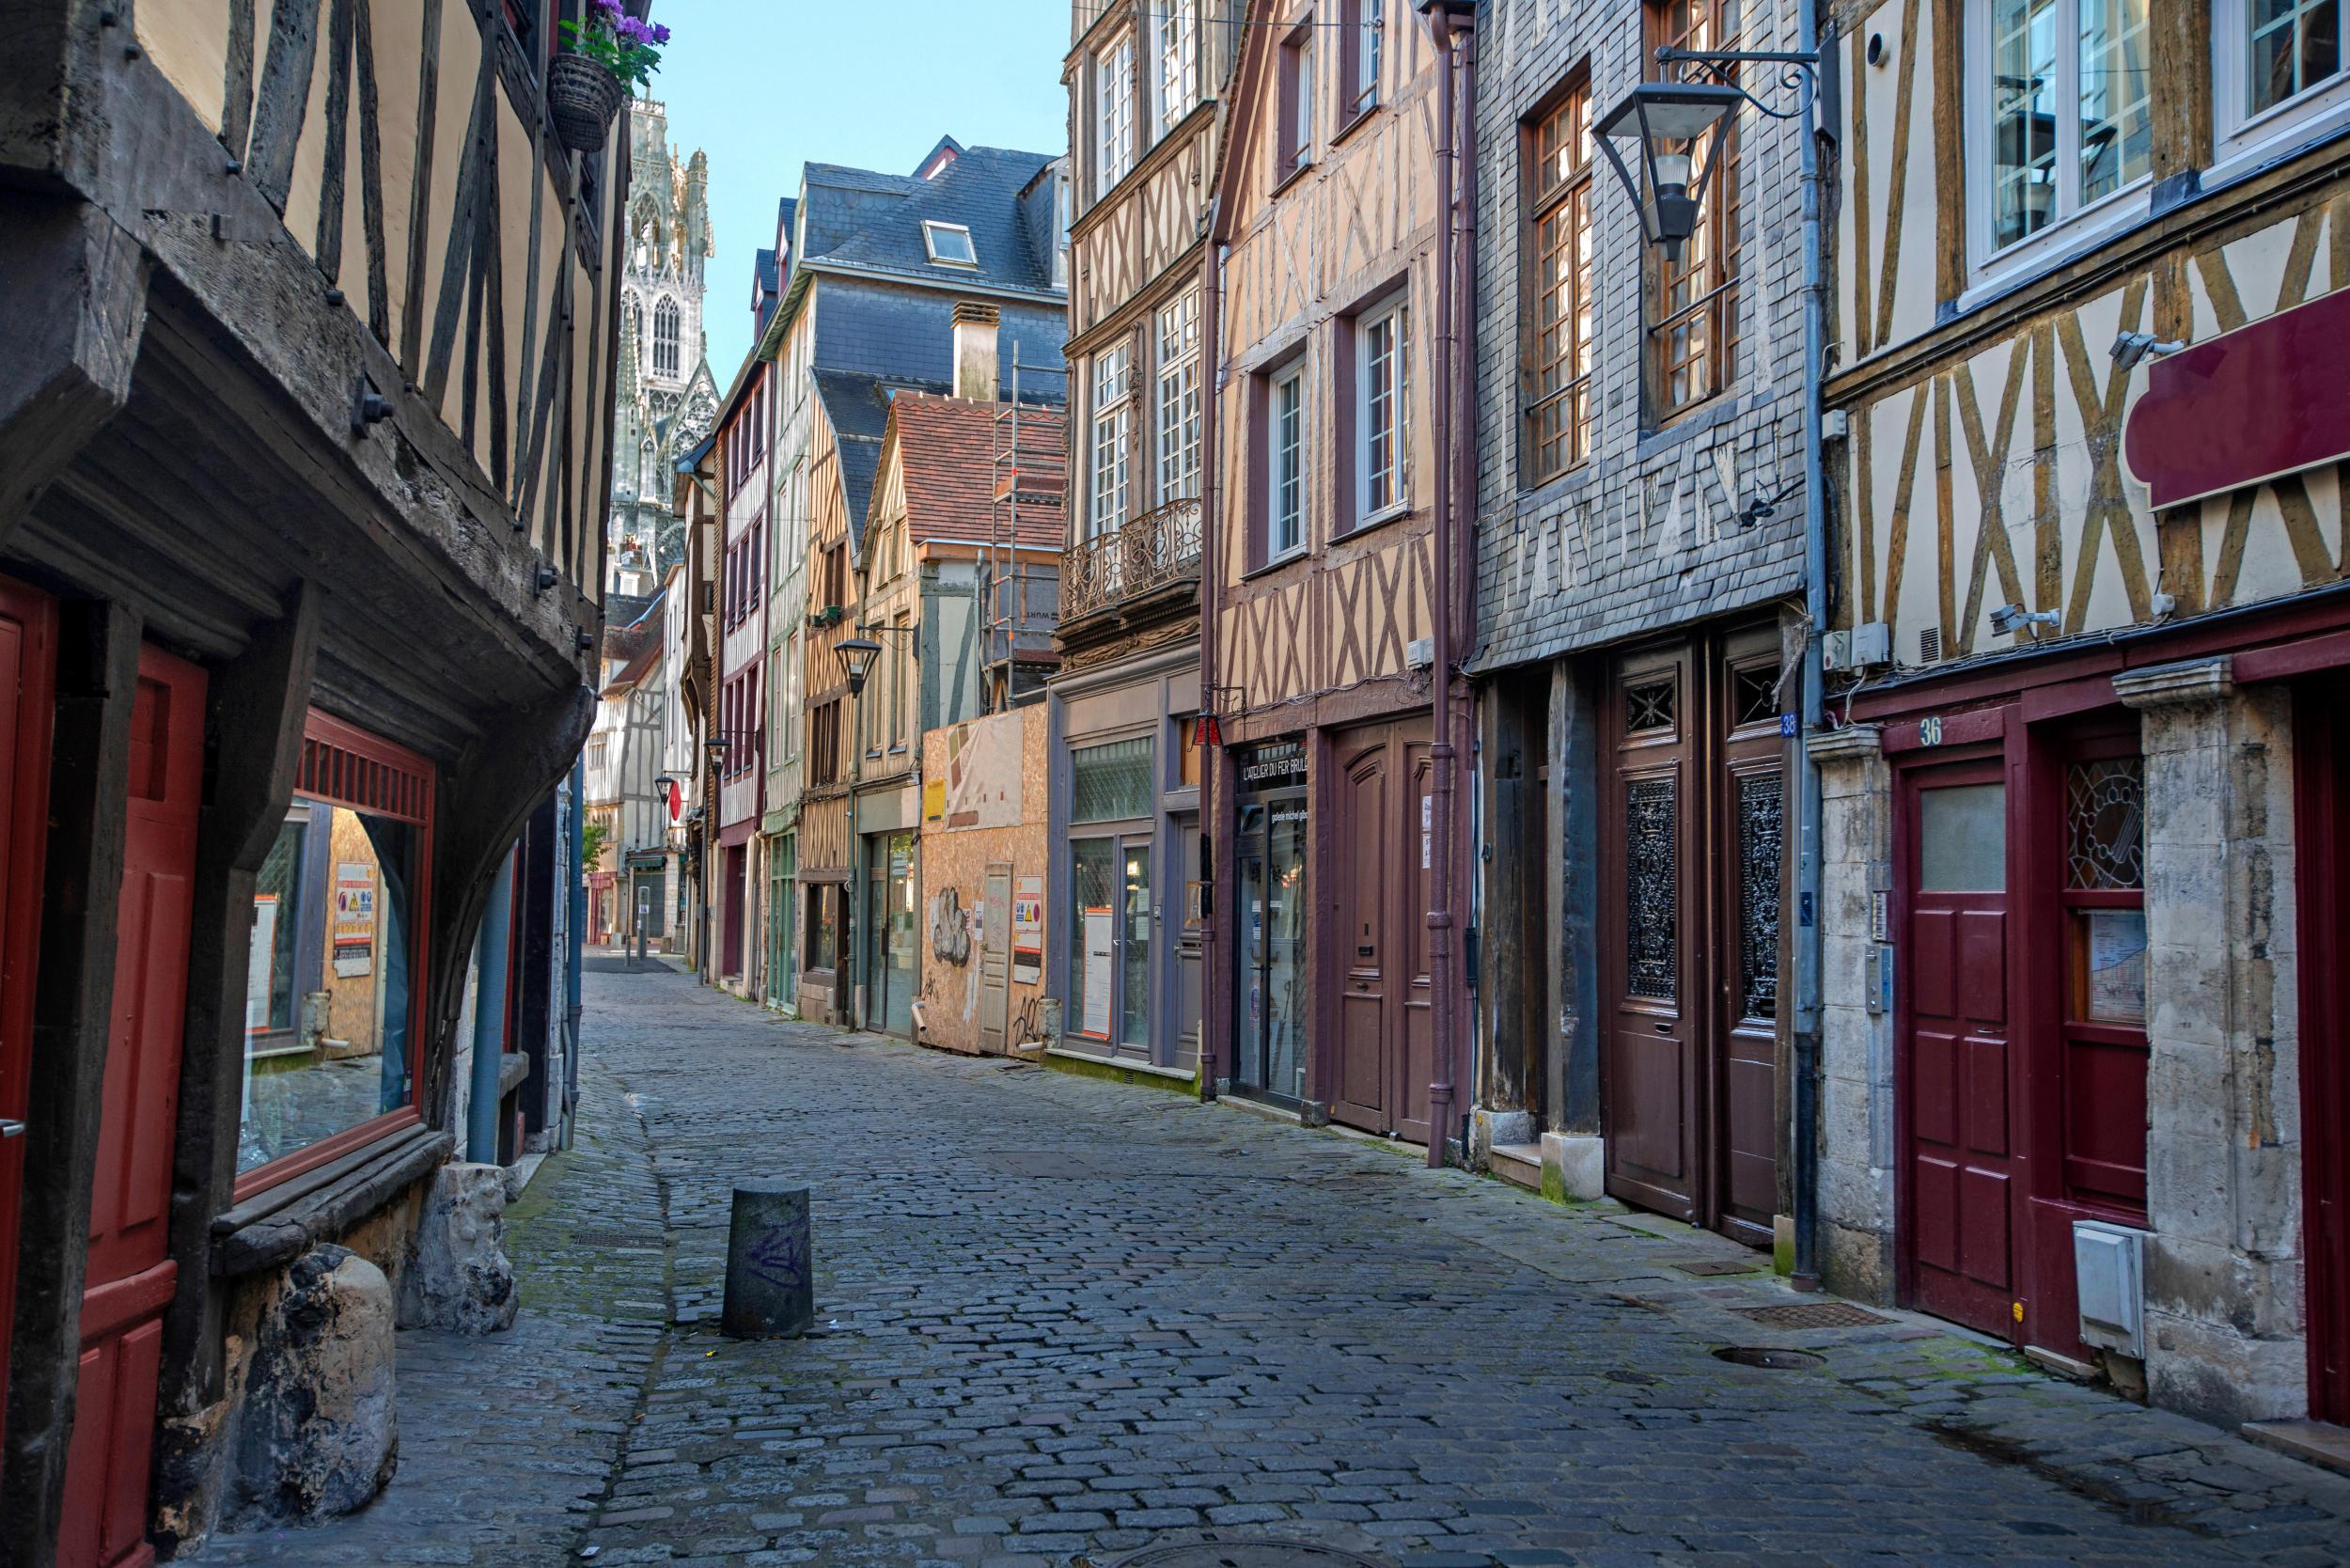 Explore the pretty streets of Rouen